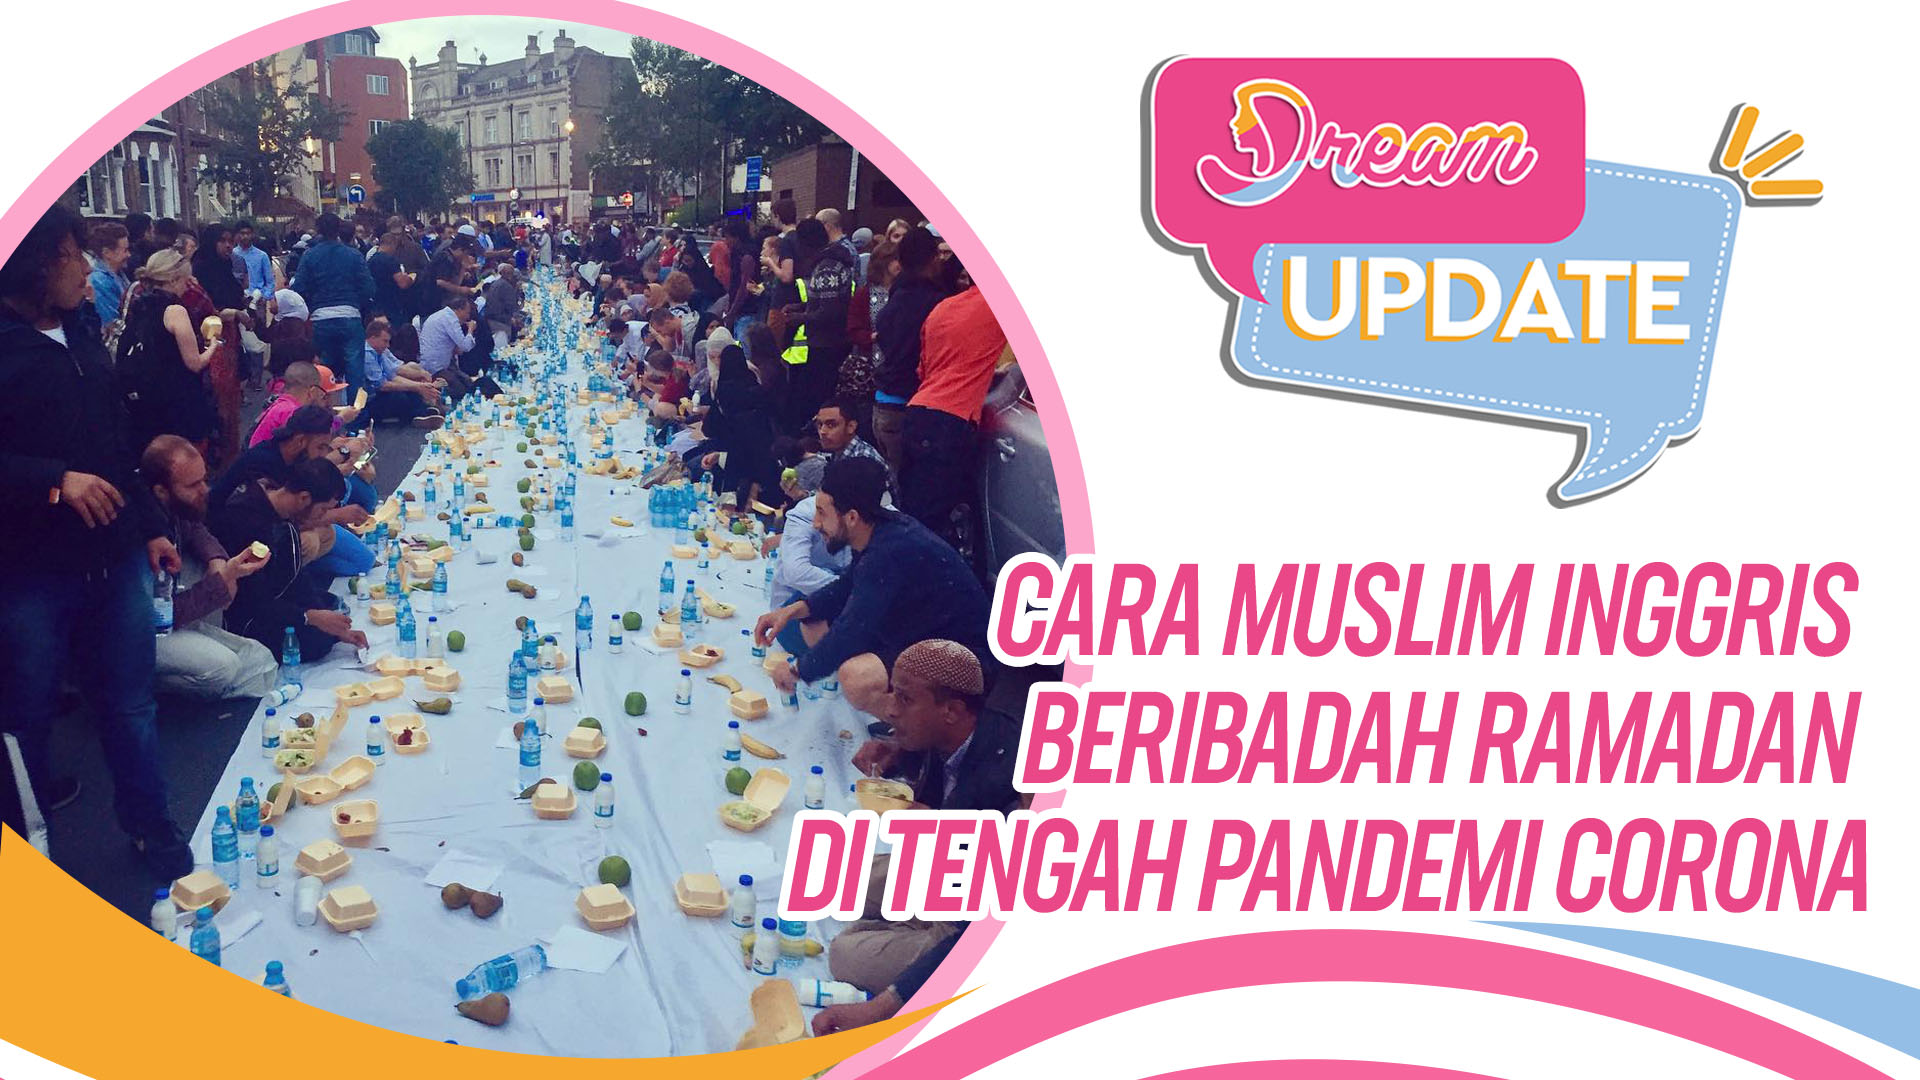 Cara Muslim Inggris Jalani Ibadah Ramadan Saat Wabah Corona